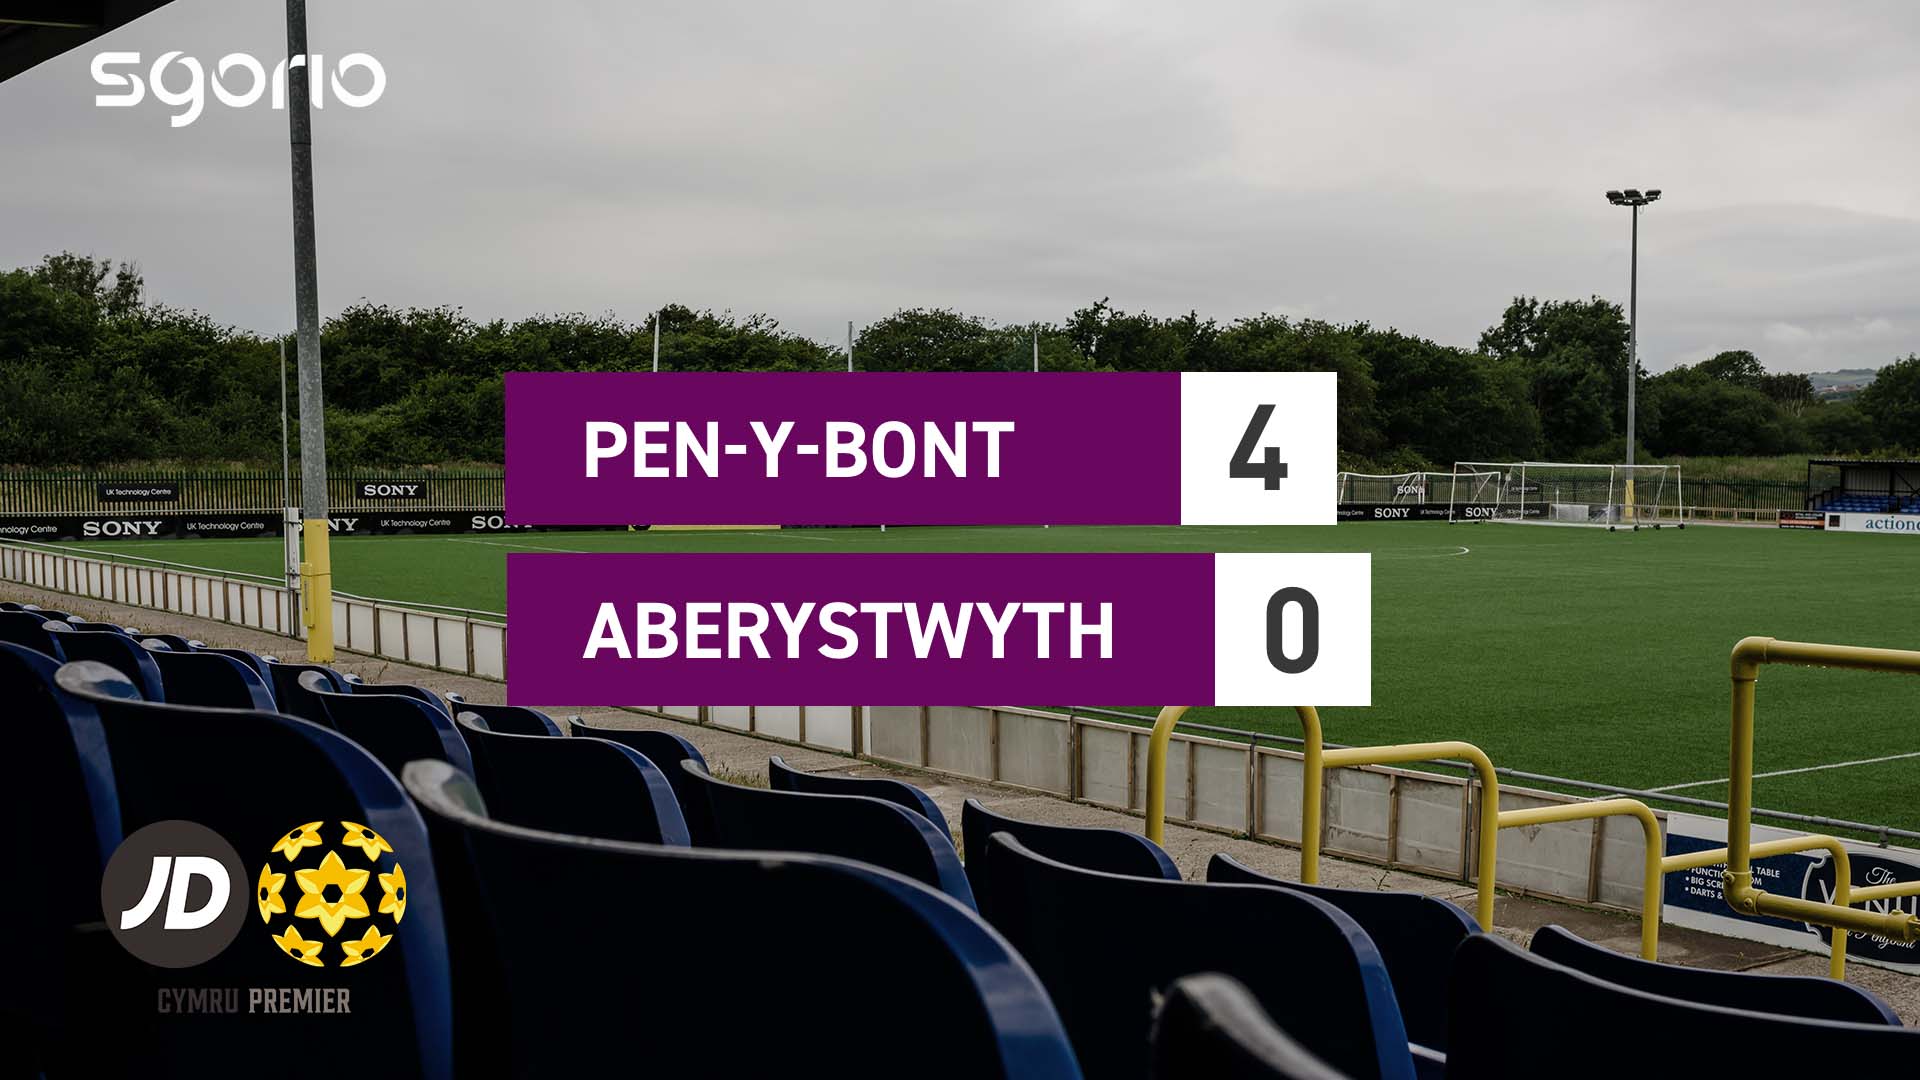 Pen-y-bont 4-0 Aberystwyth